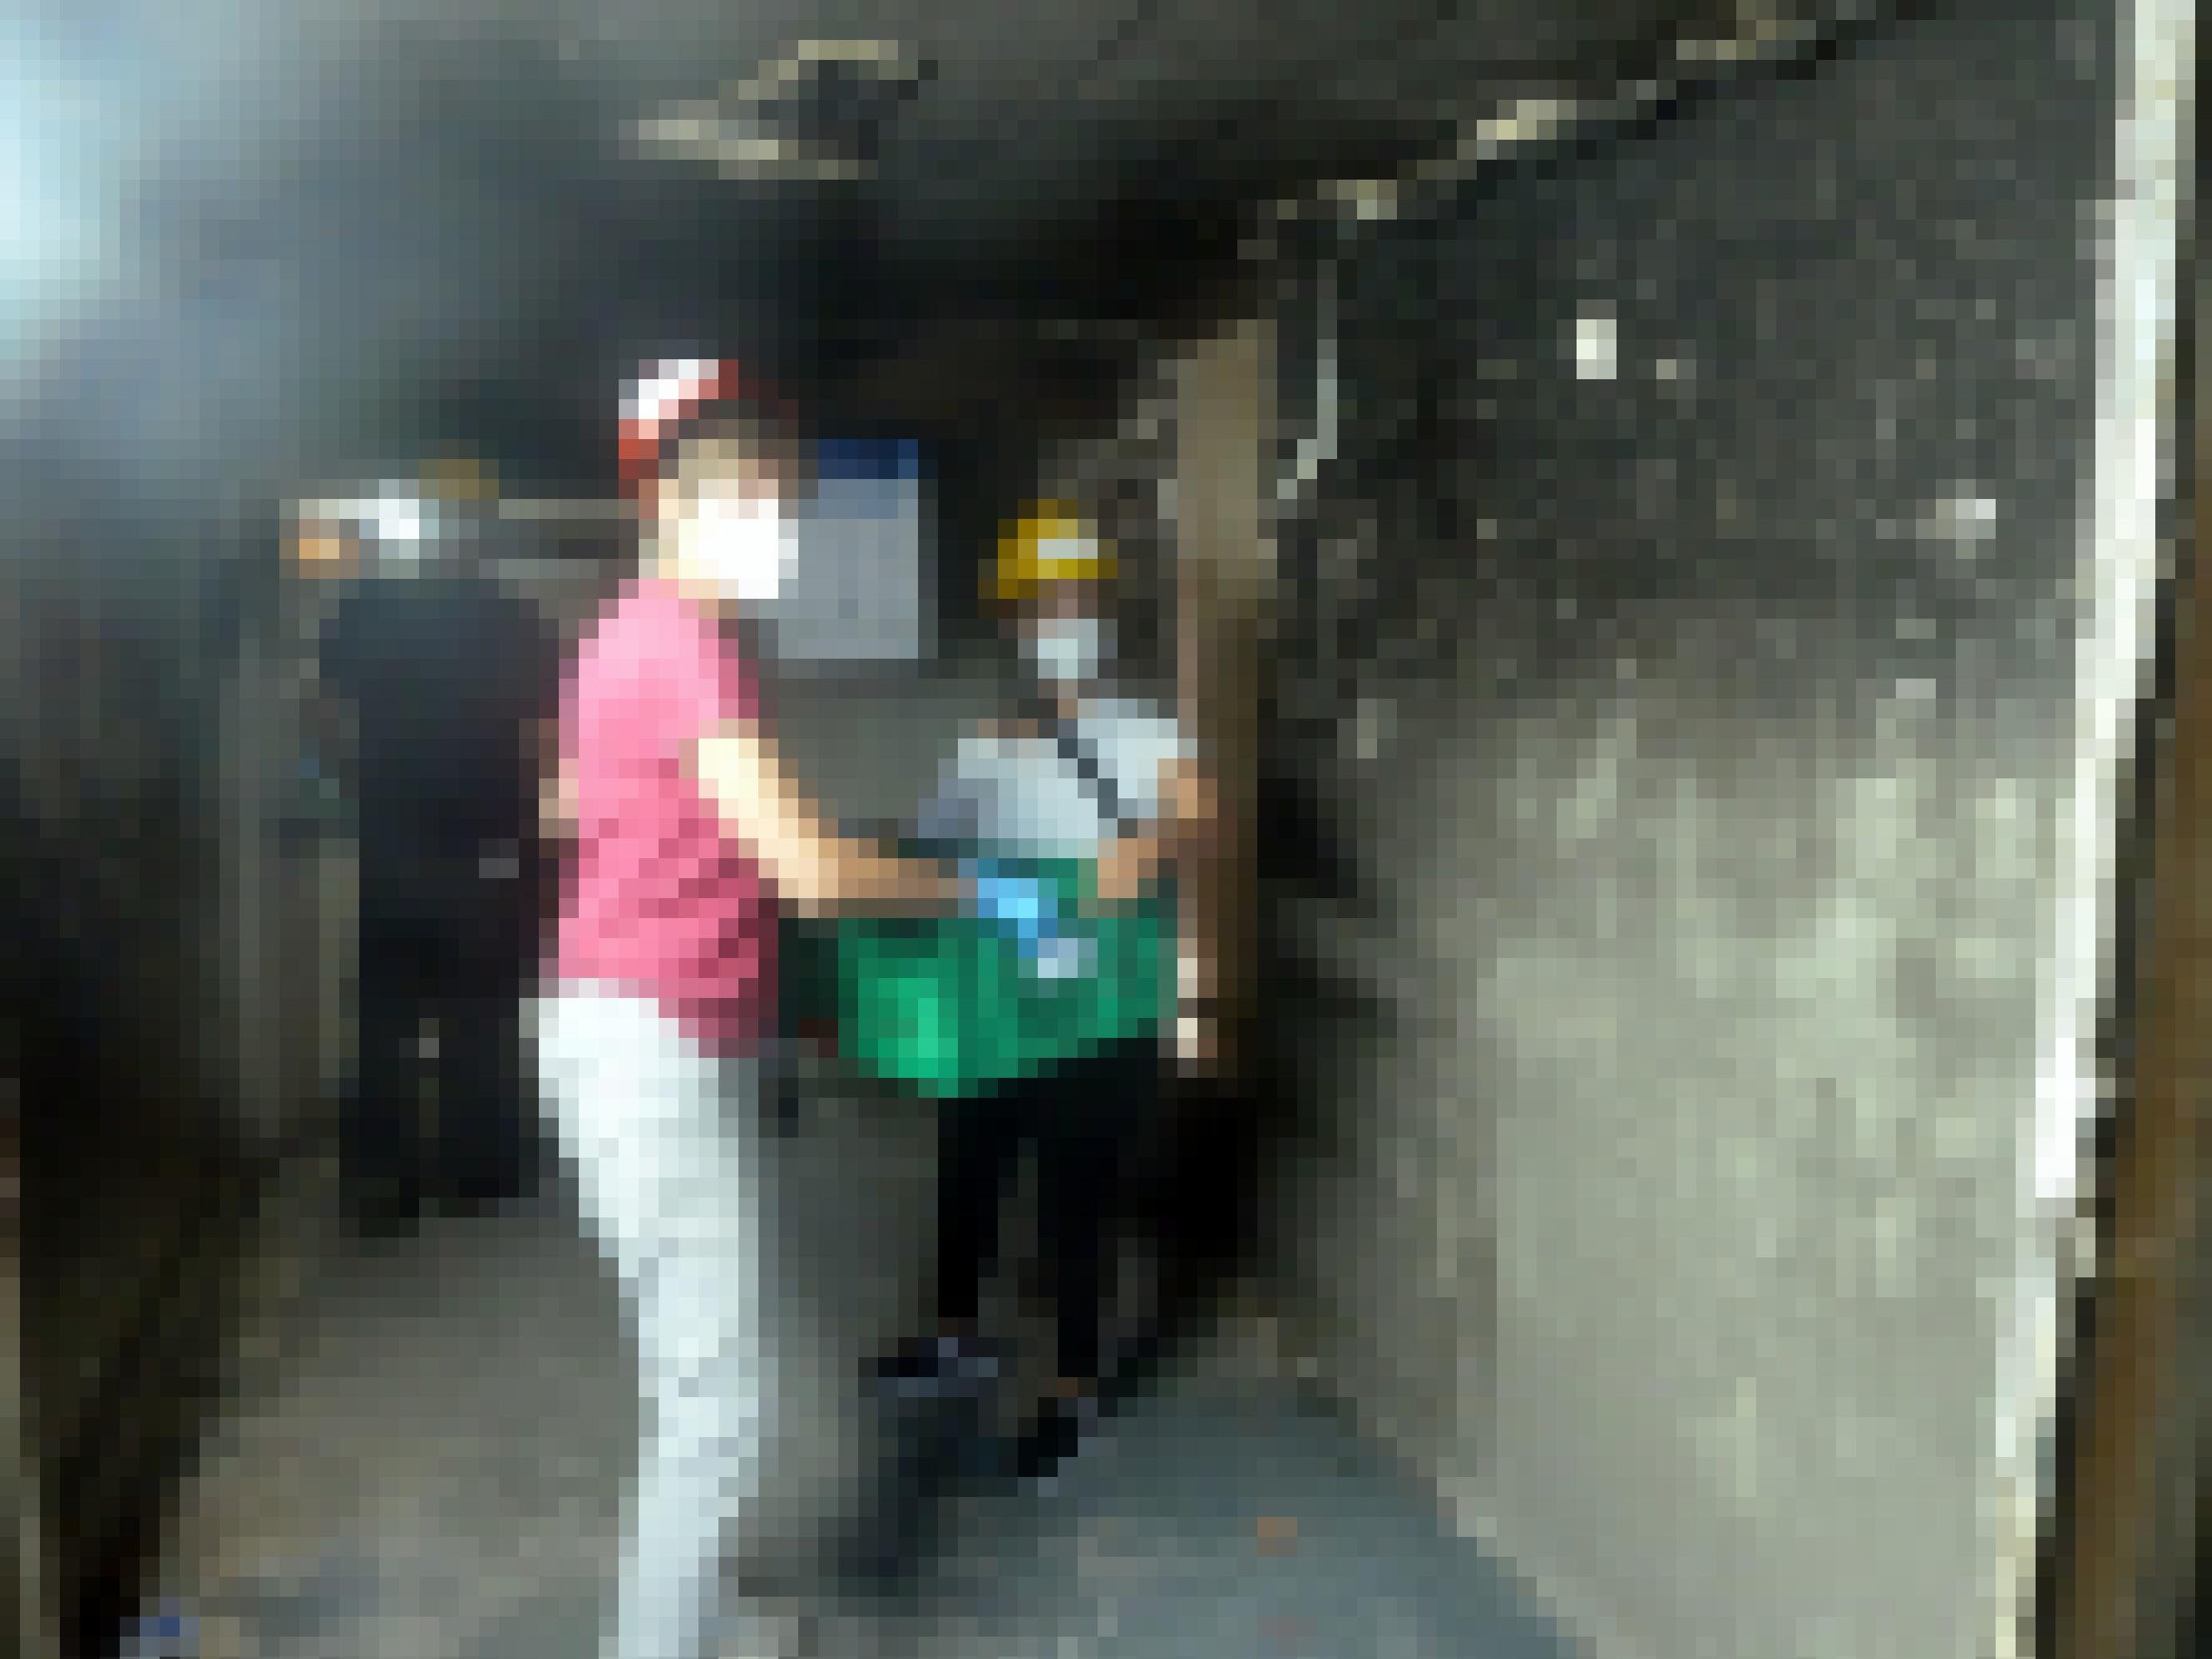 Eine Frau reicht einer anderen eine Kiste mit Archivmaterial, die Wände sind vom Feuer verrusst